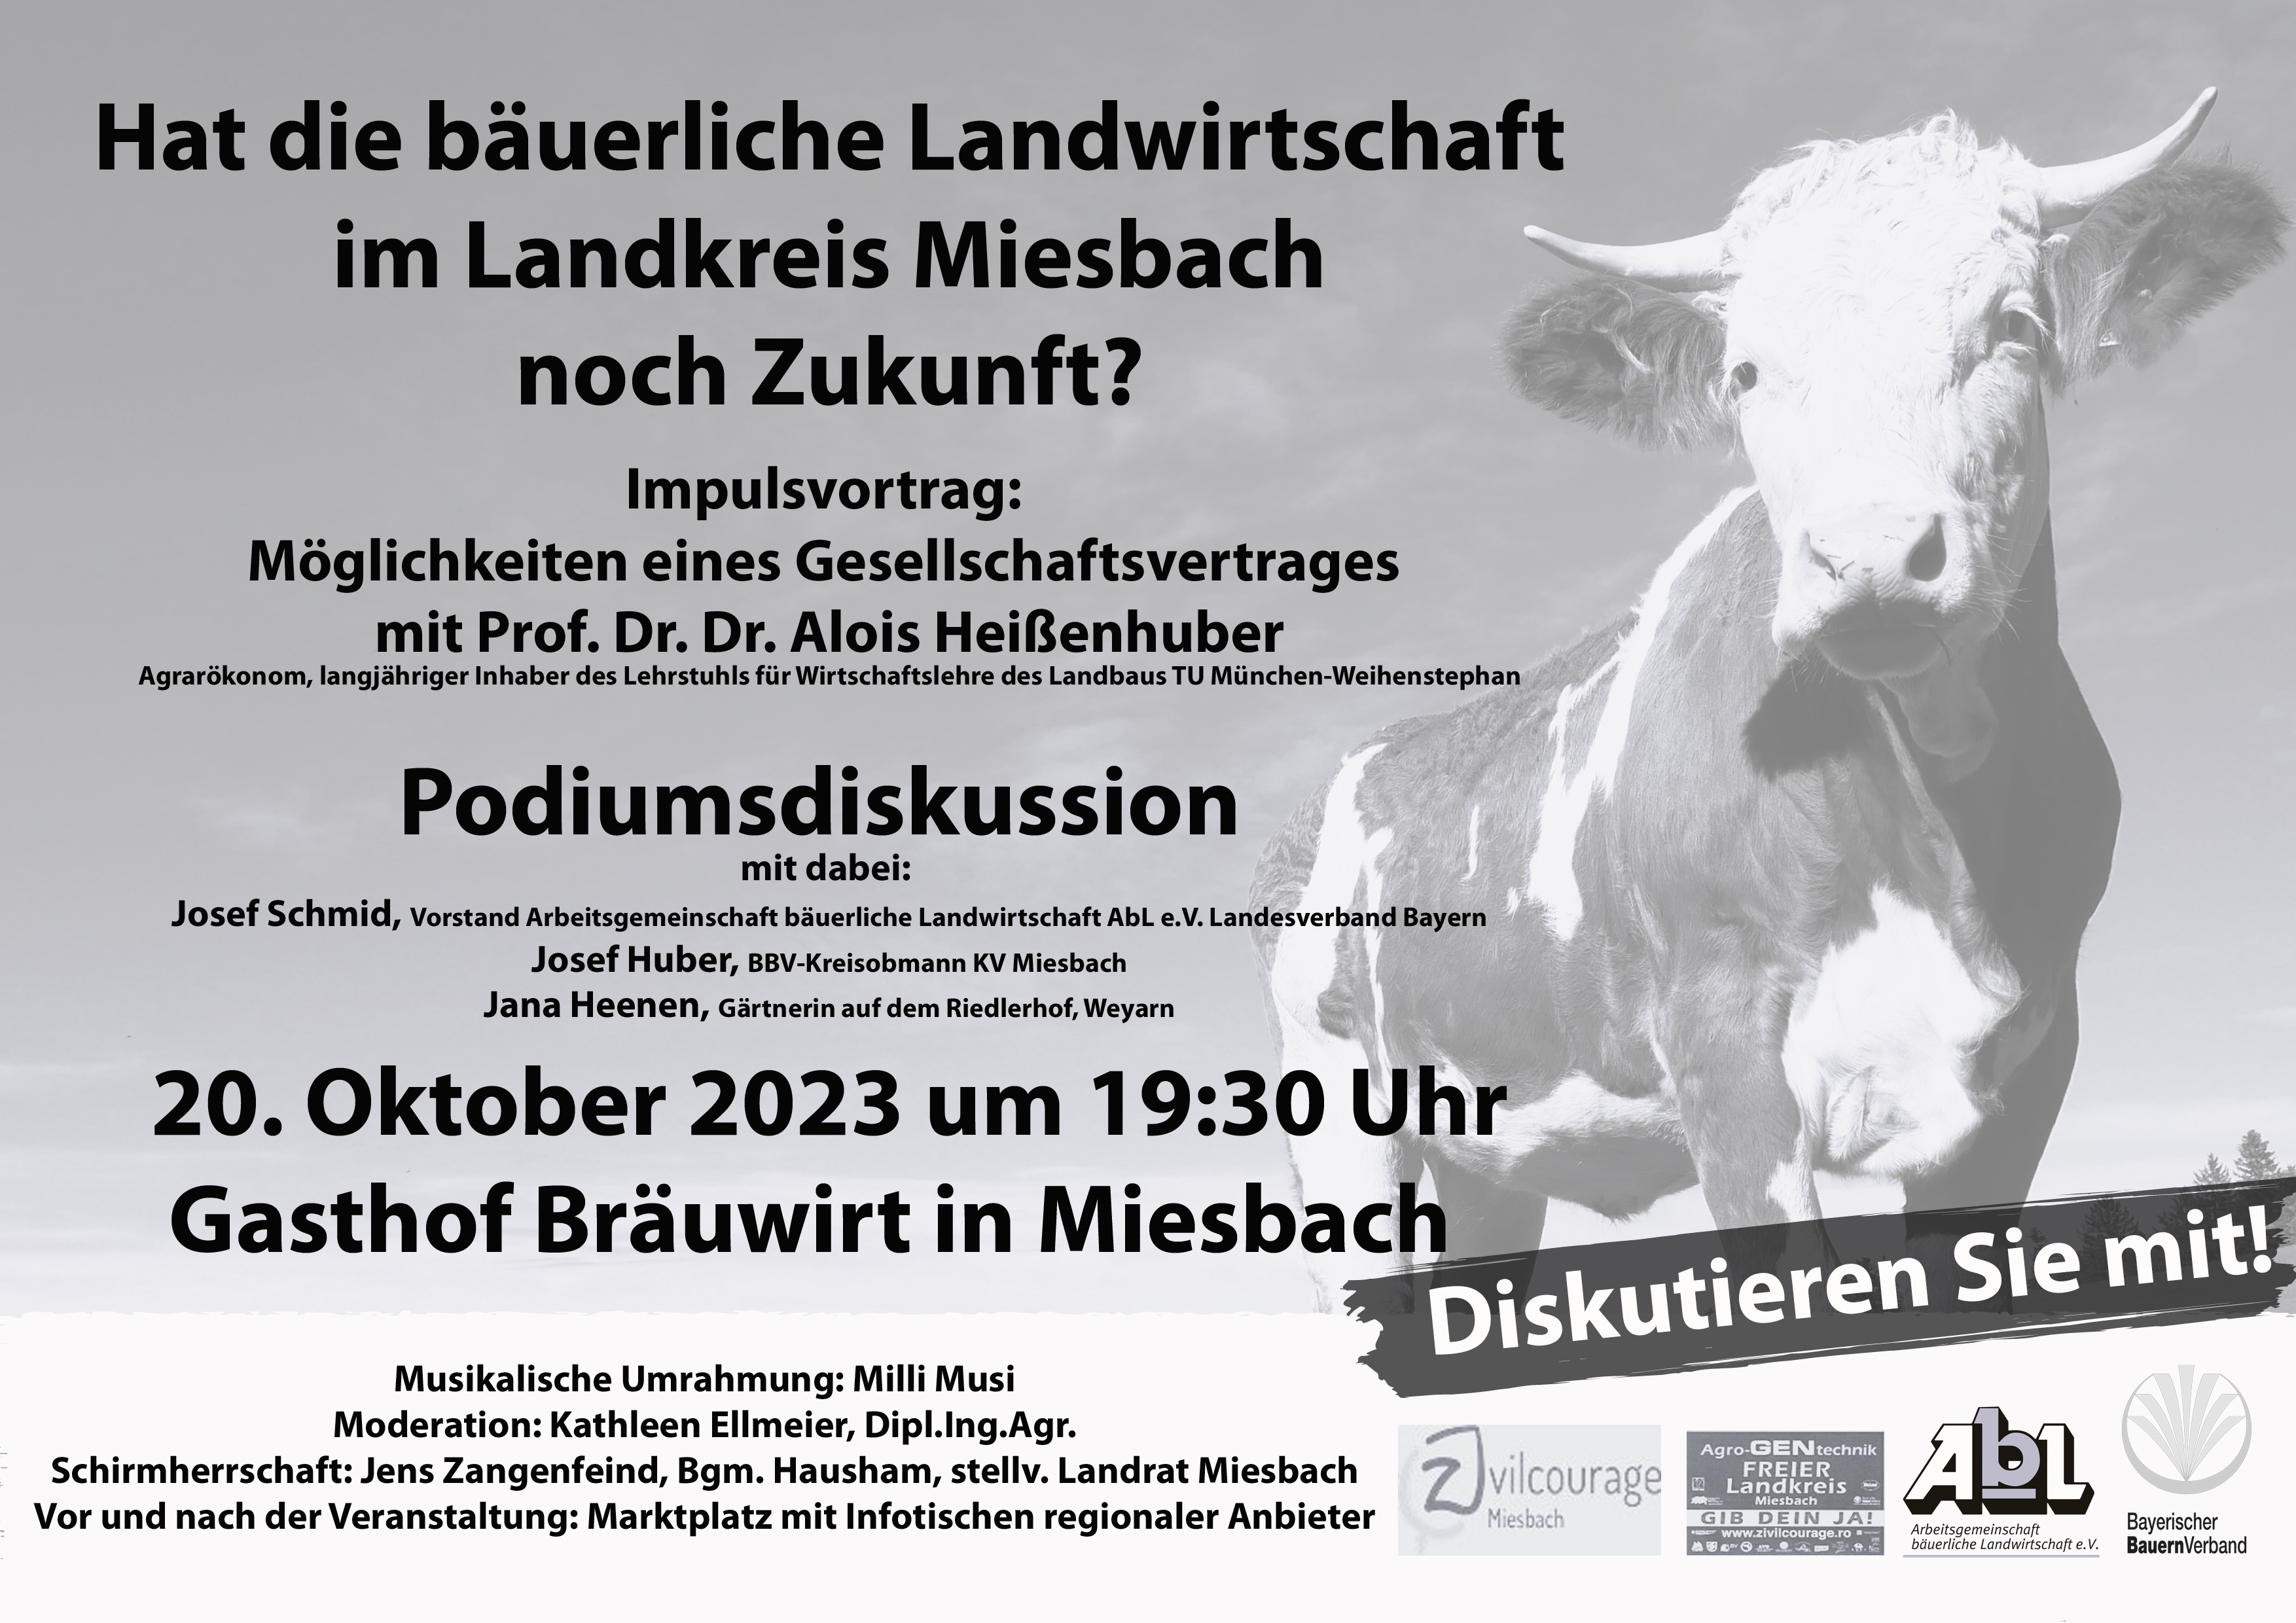 Hat die bäuerliche Landwirtschaft im Landkreis Miesbach noch Zukunft?